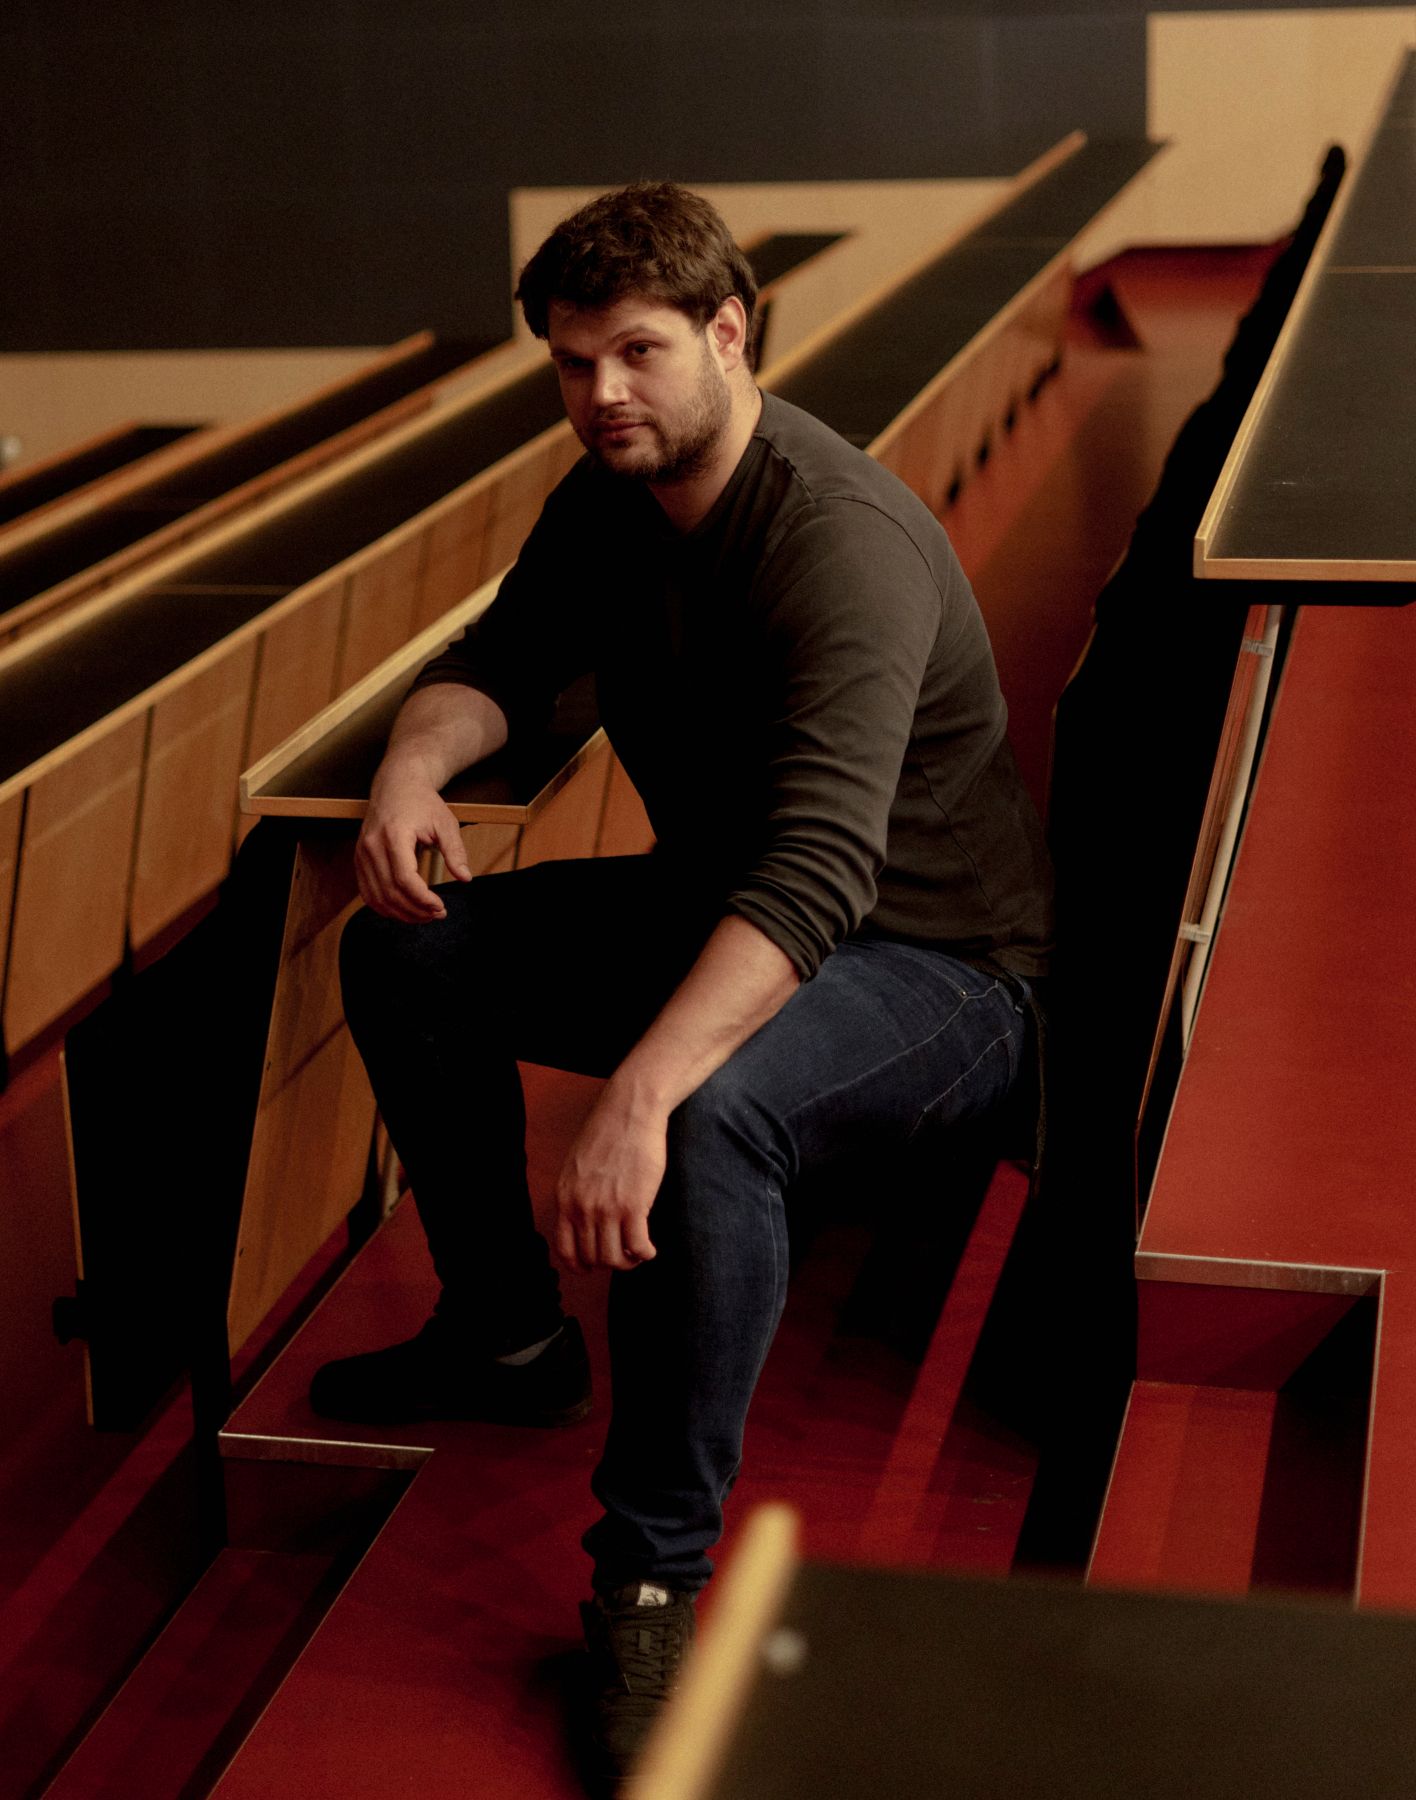 Portrætfoto af Christian Ramon, der sidder i et auditorium